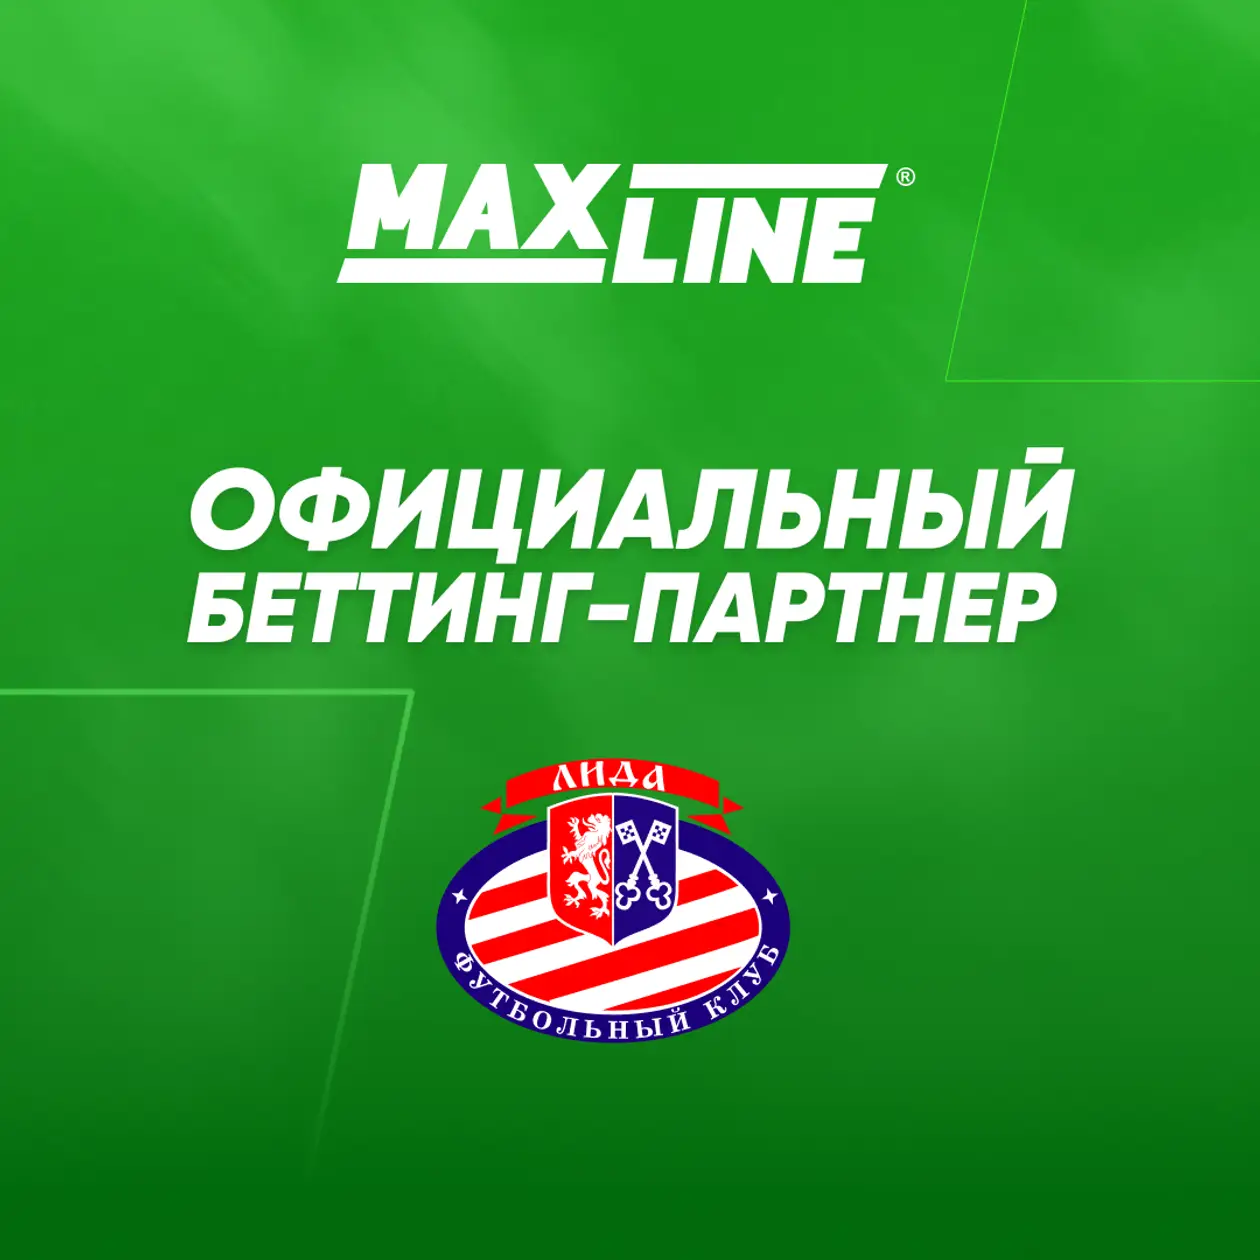 Maxline - официальный беттинг-партнер ФК «Лида»